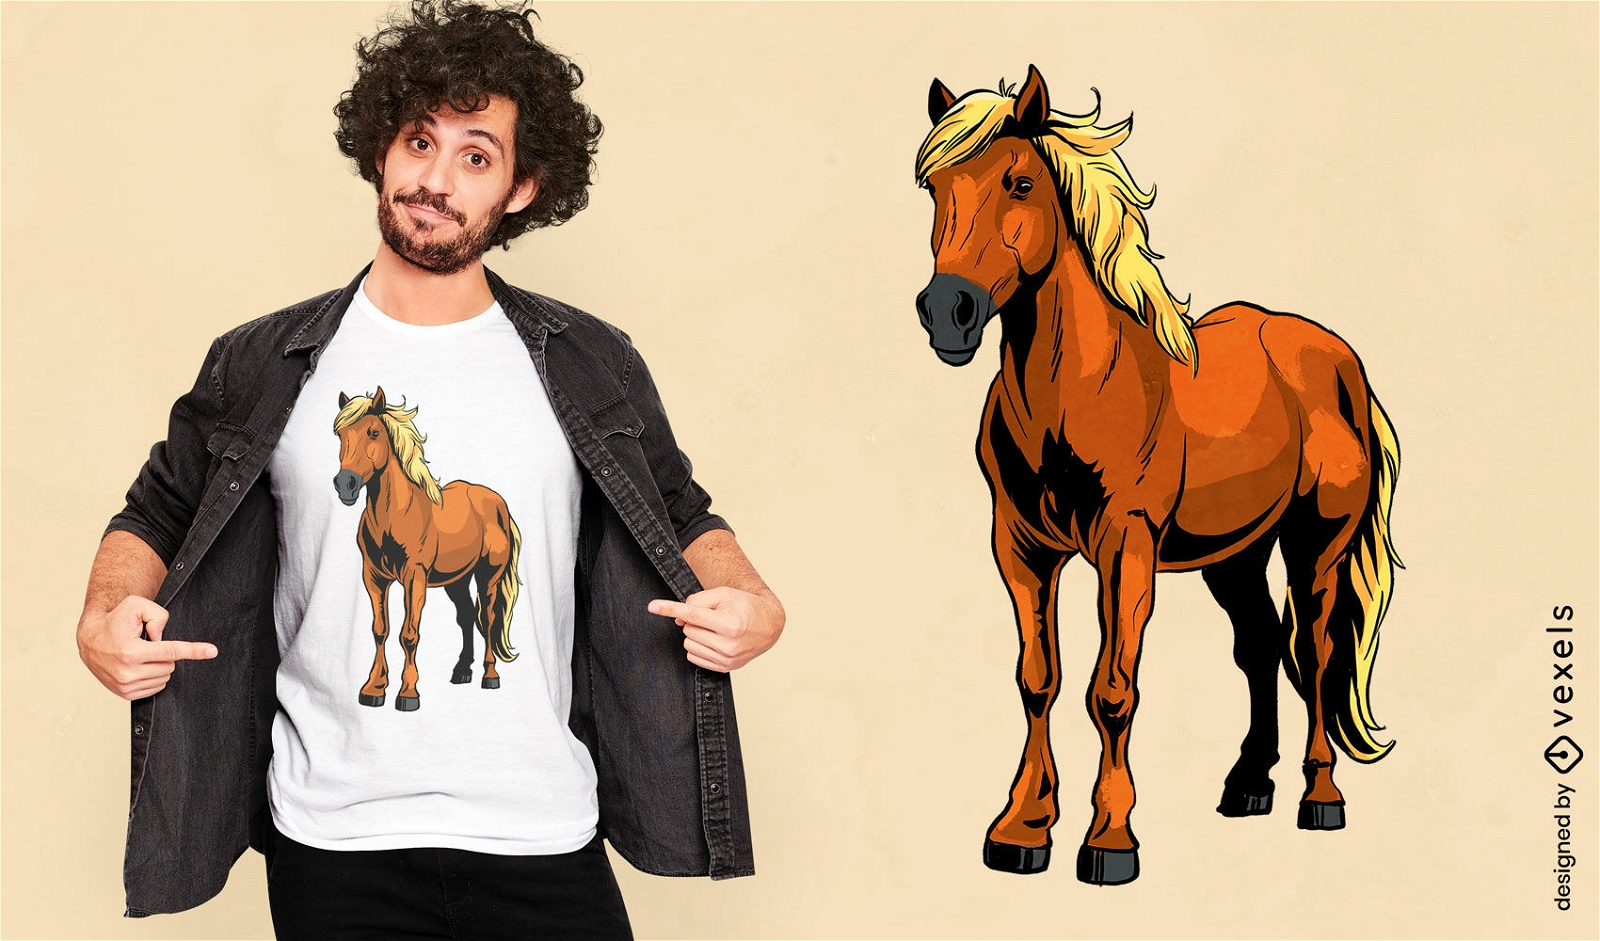 Dise?o de camiseta con ilustraci?n de caballo island?s.